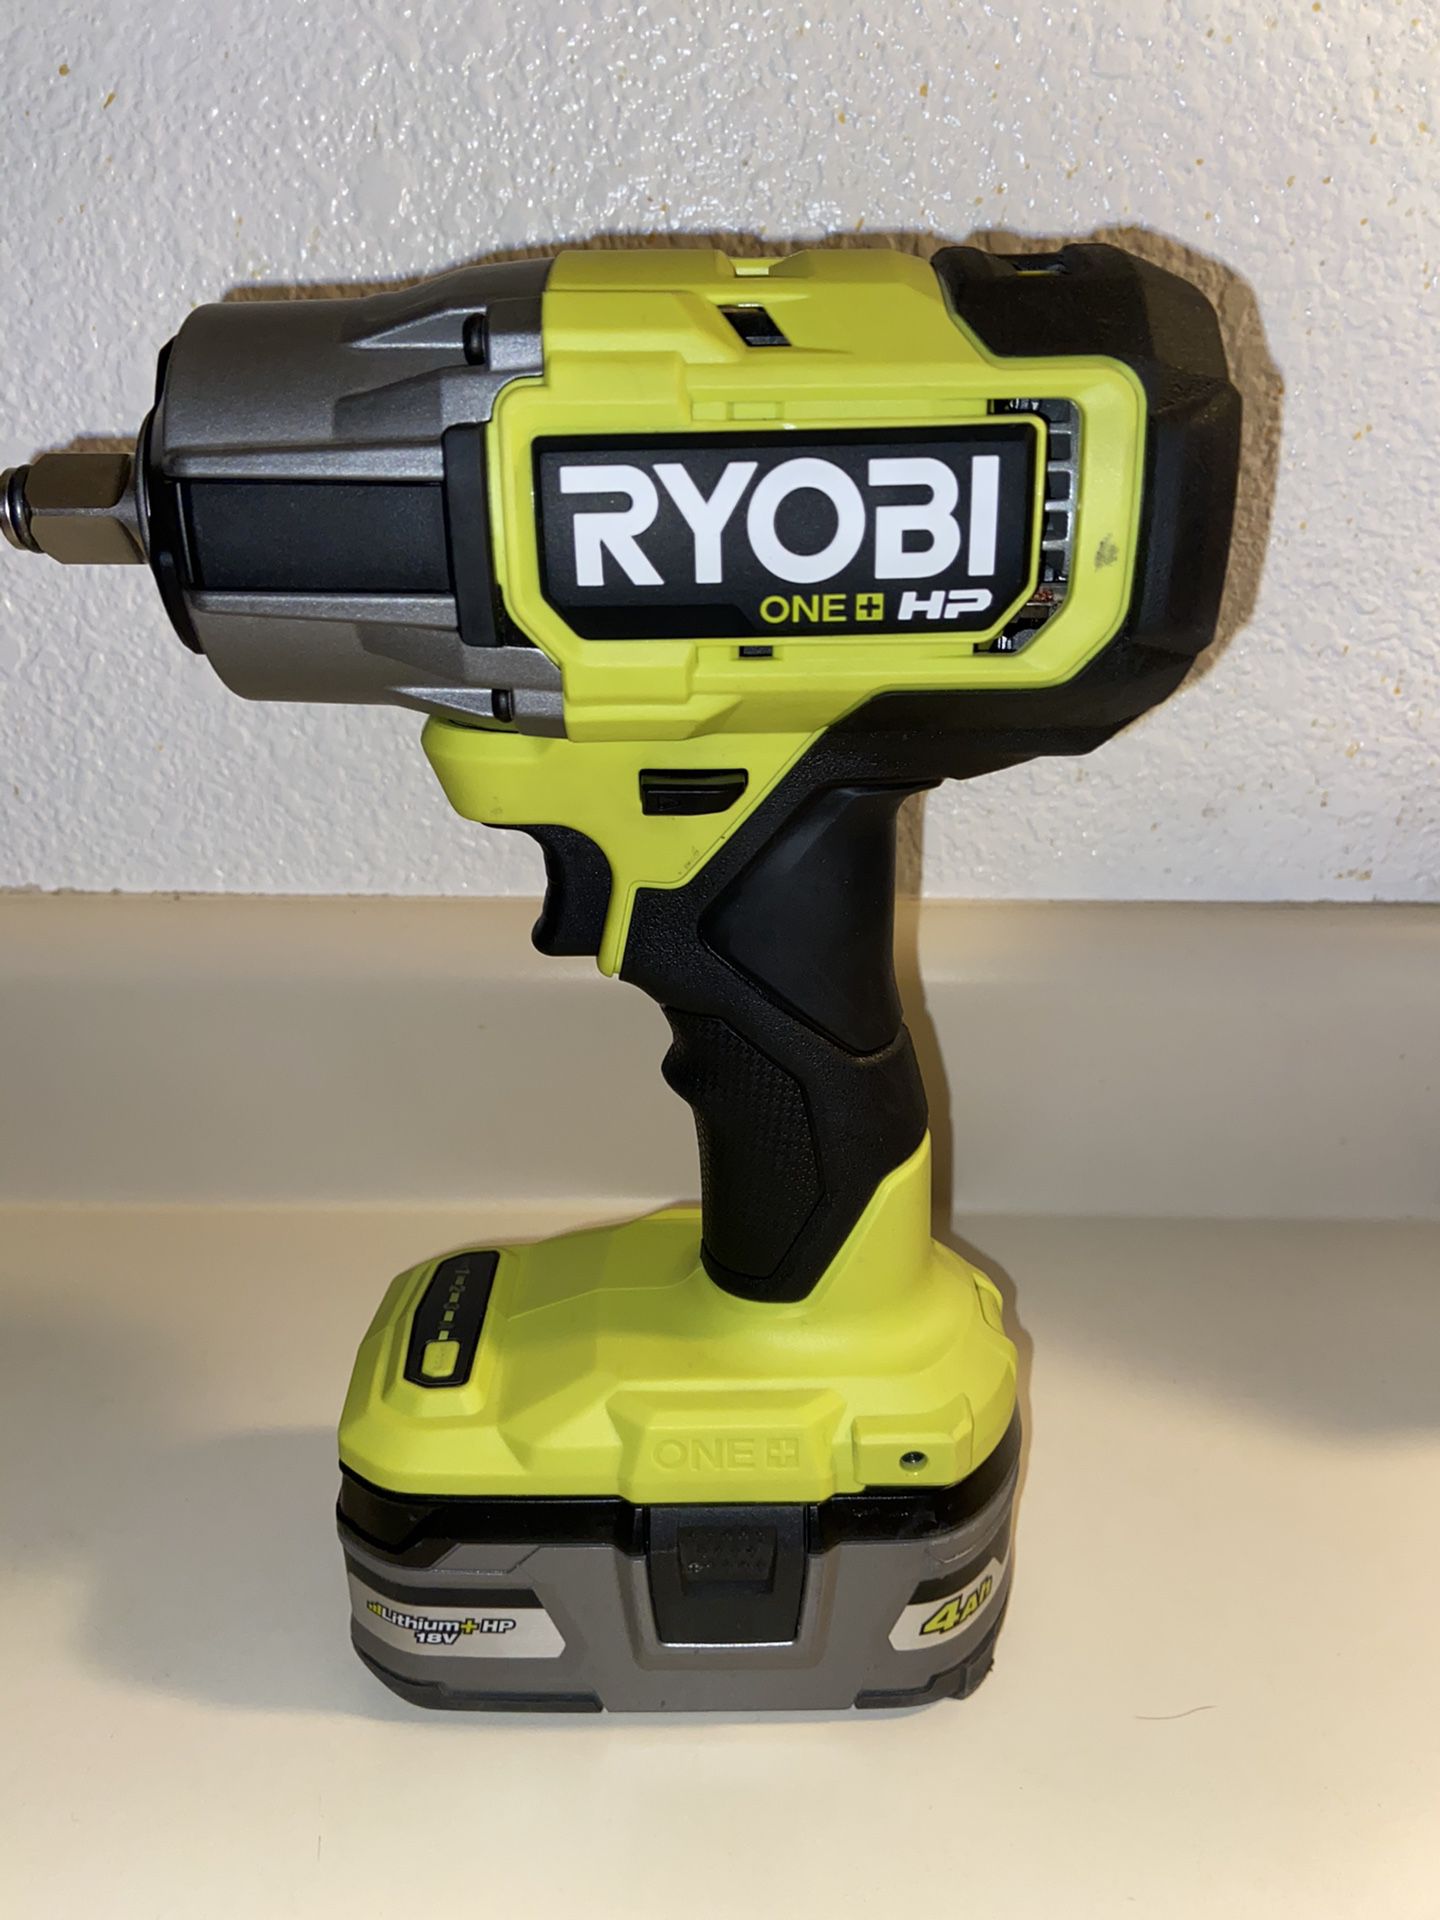 RYOBI One+HV 18V Brushless Cordless 1/2 Inch Impact Wrench